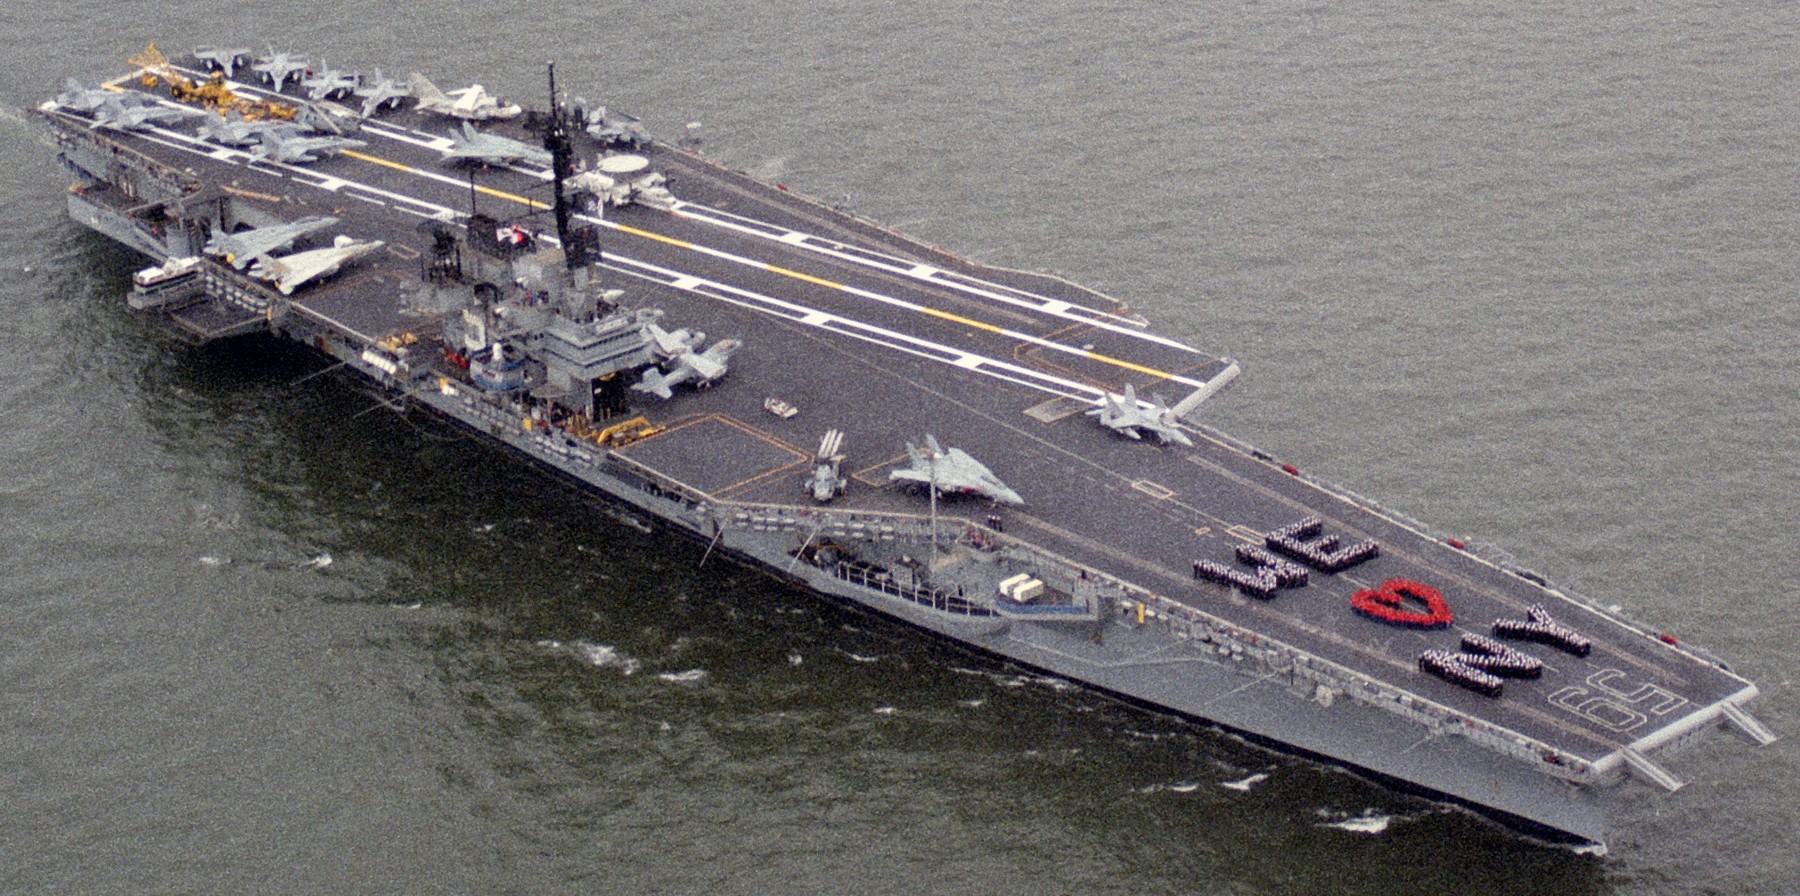 cv-59 uss forrestal aircraft carrier us navy fleet week new york 1989 104